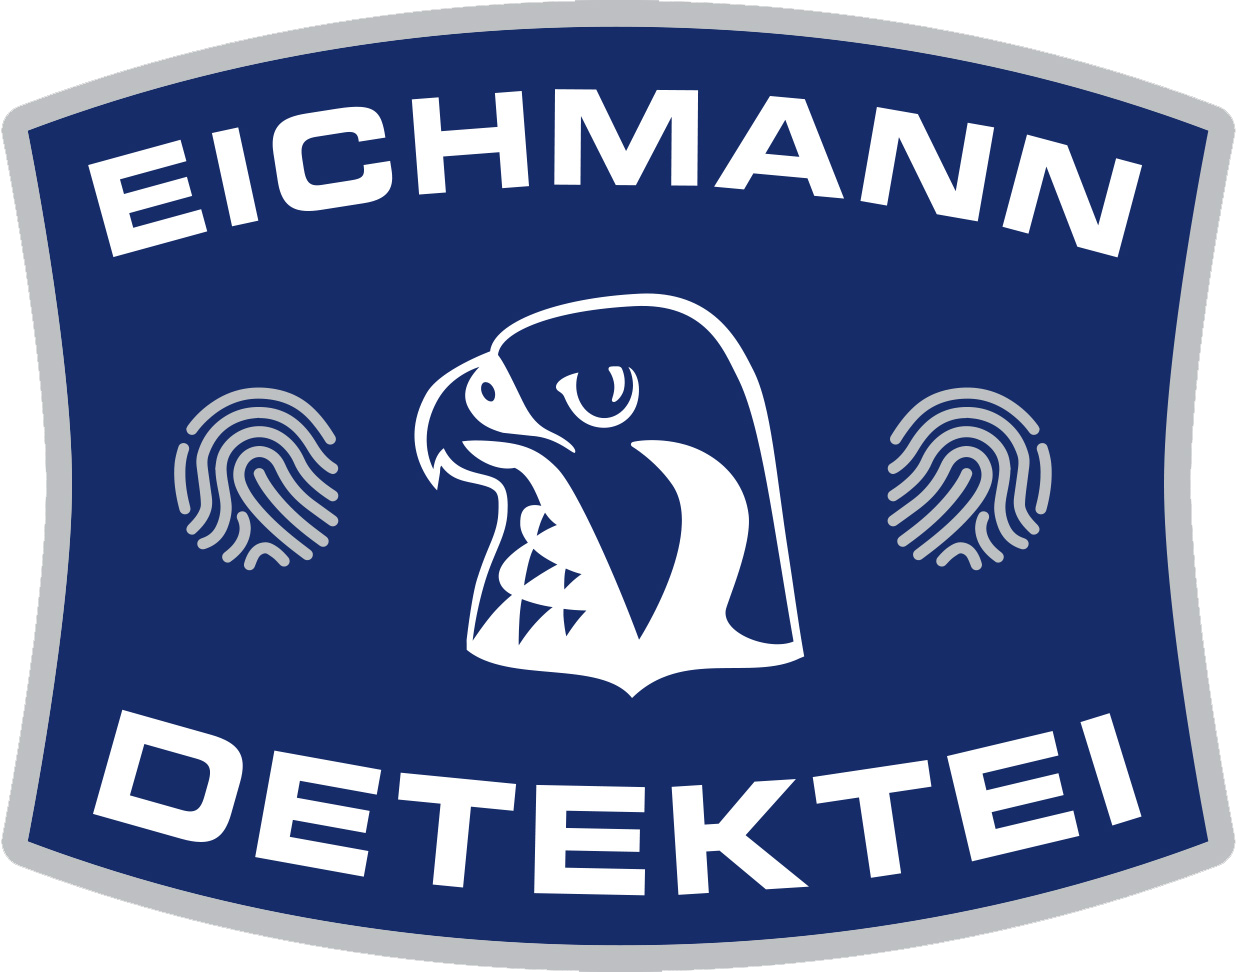 (c) Detektei-eichmann.de